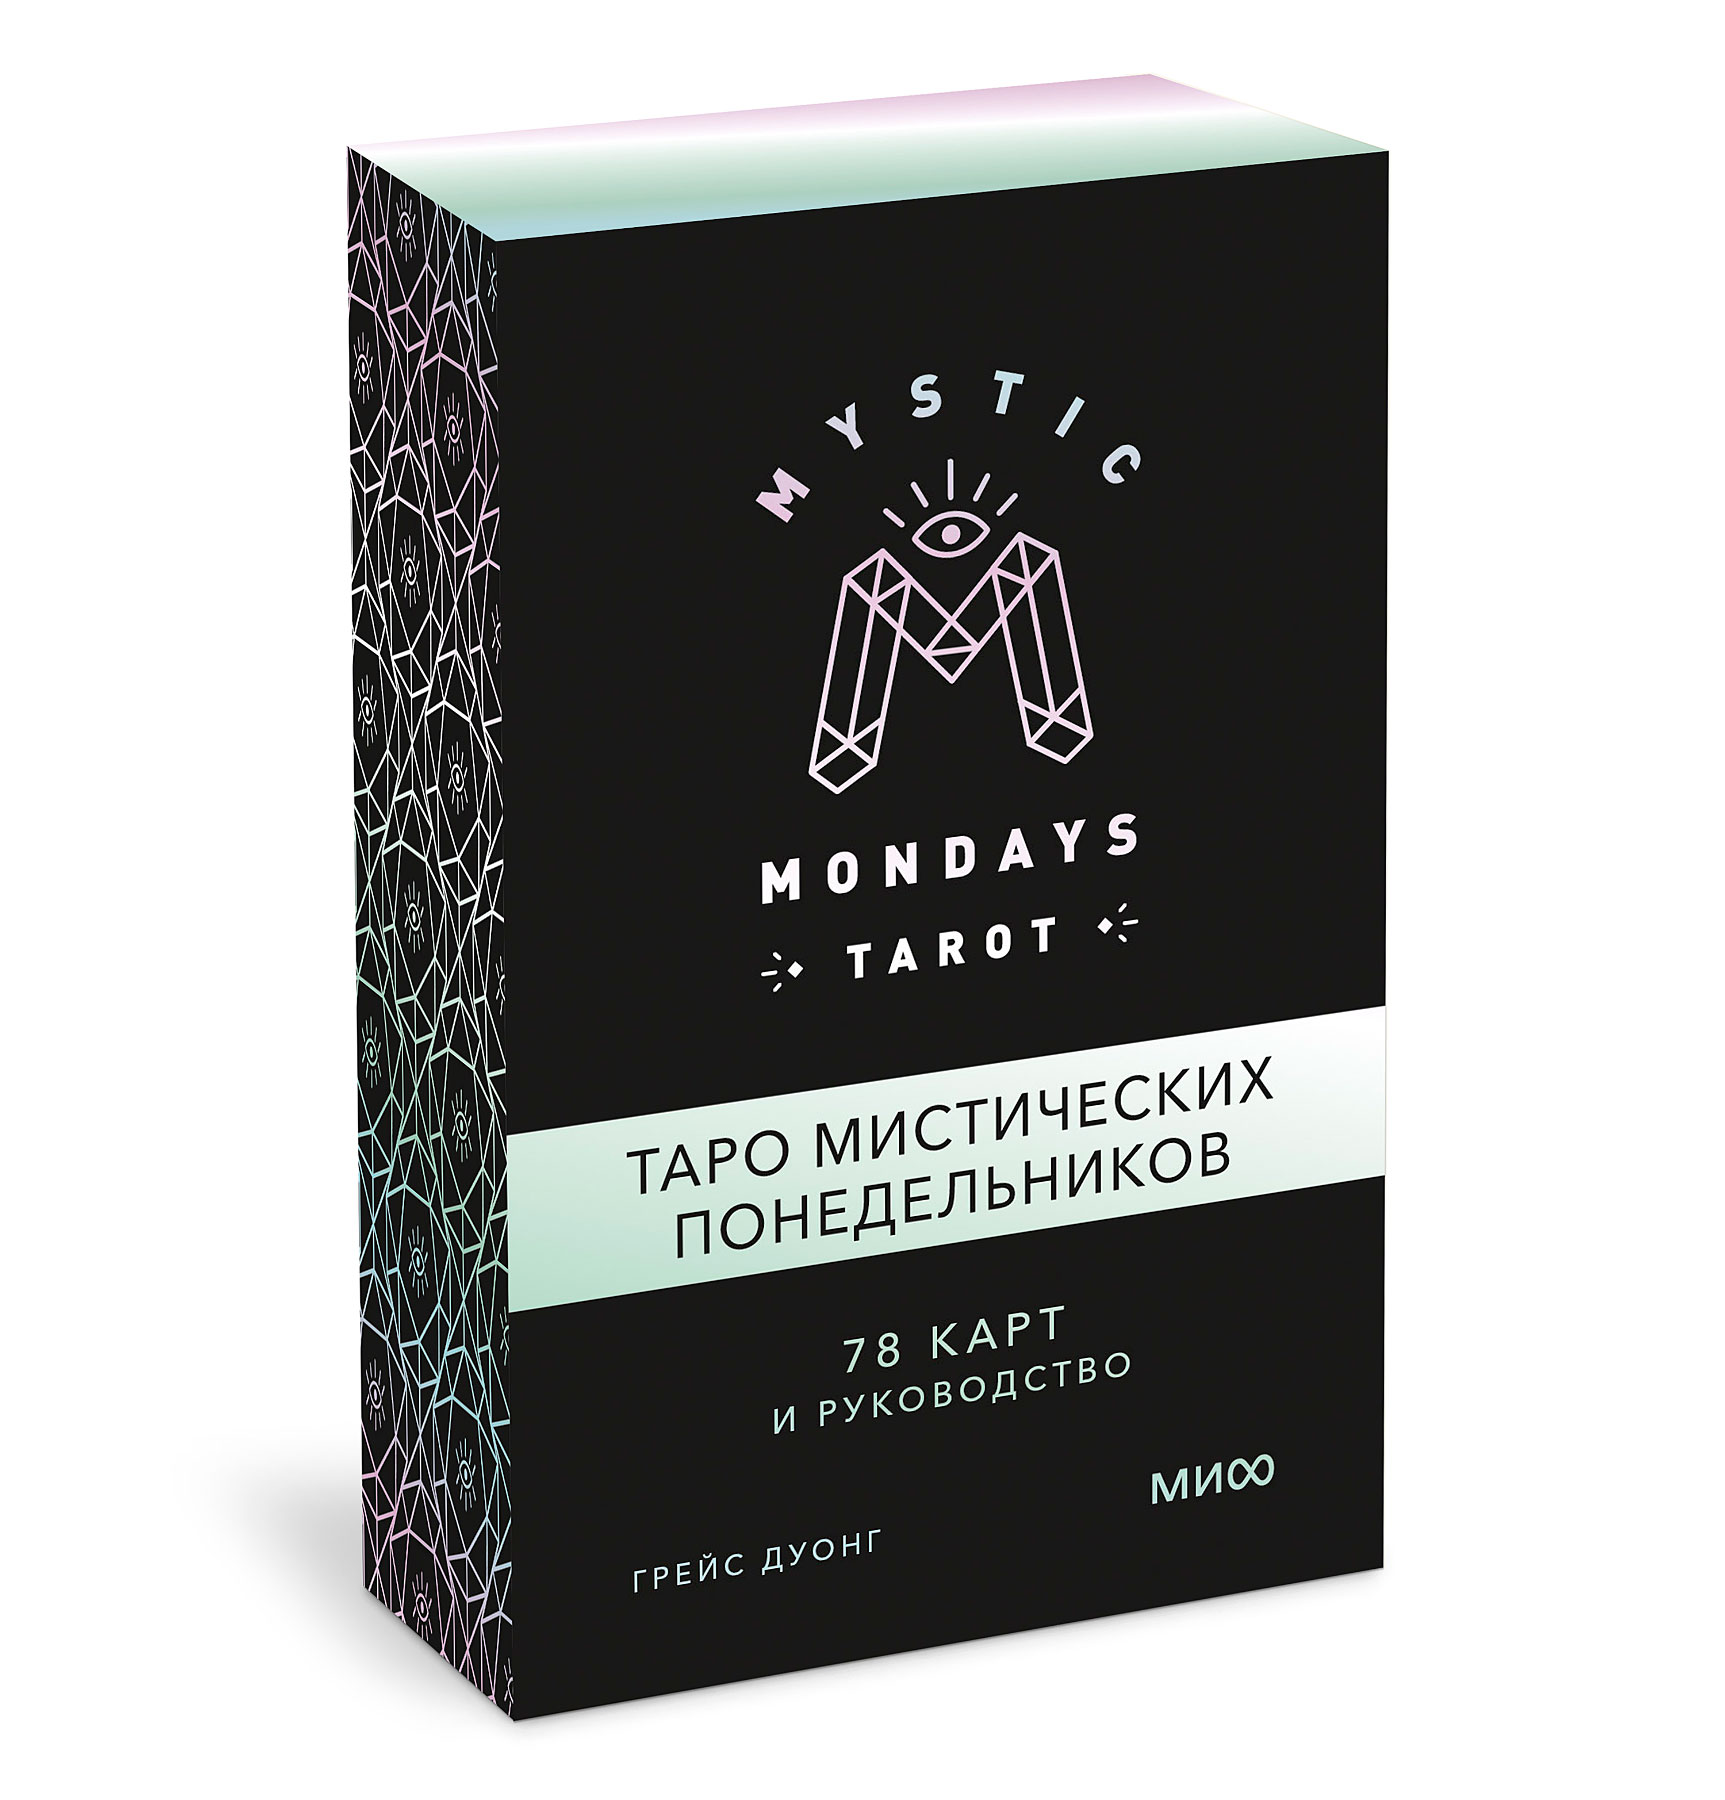 Mystic Mondays Tarot: Таро мистических понедельников – 78 карт и руководство (в подарочном оформлении)